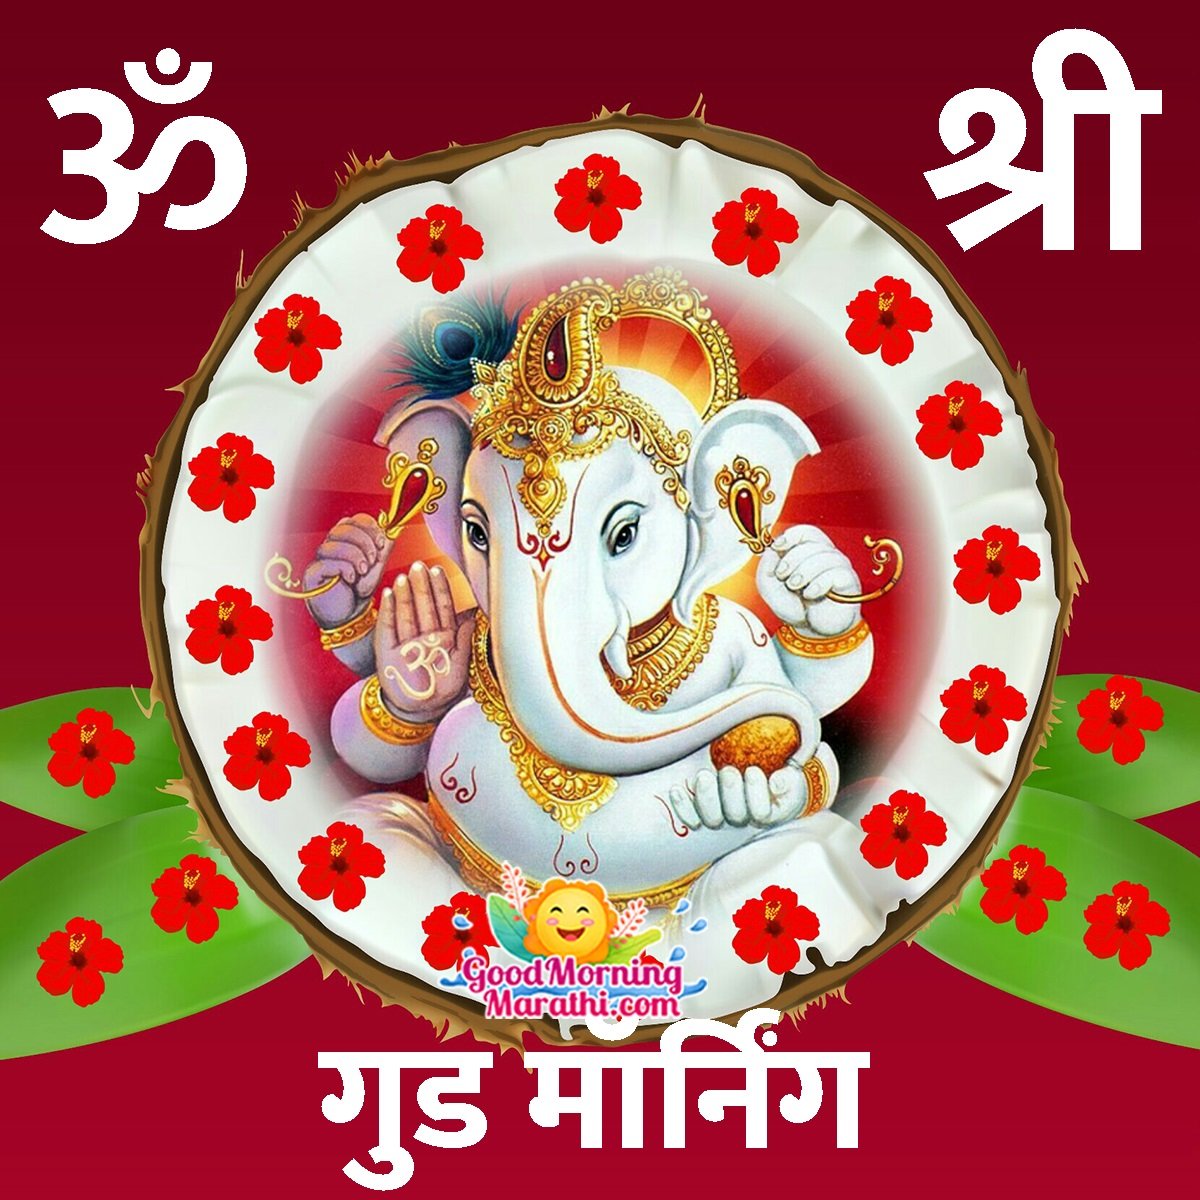 Good Morning Ganesha Marathi Images - Good Morning Wishes & Images ...